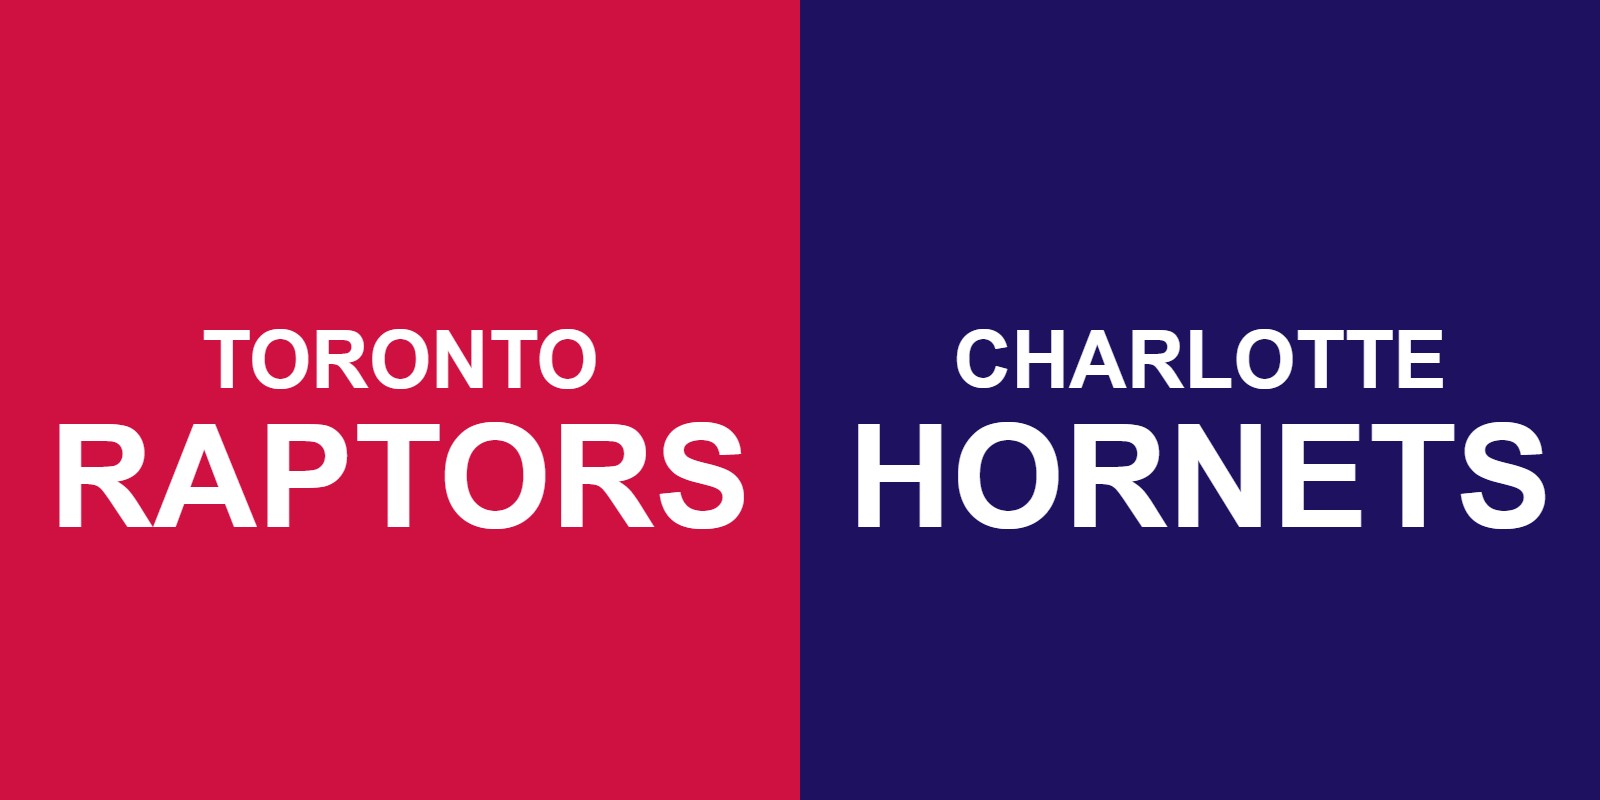 Raptors vs Hornets